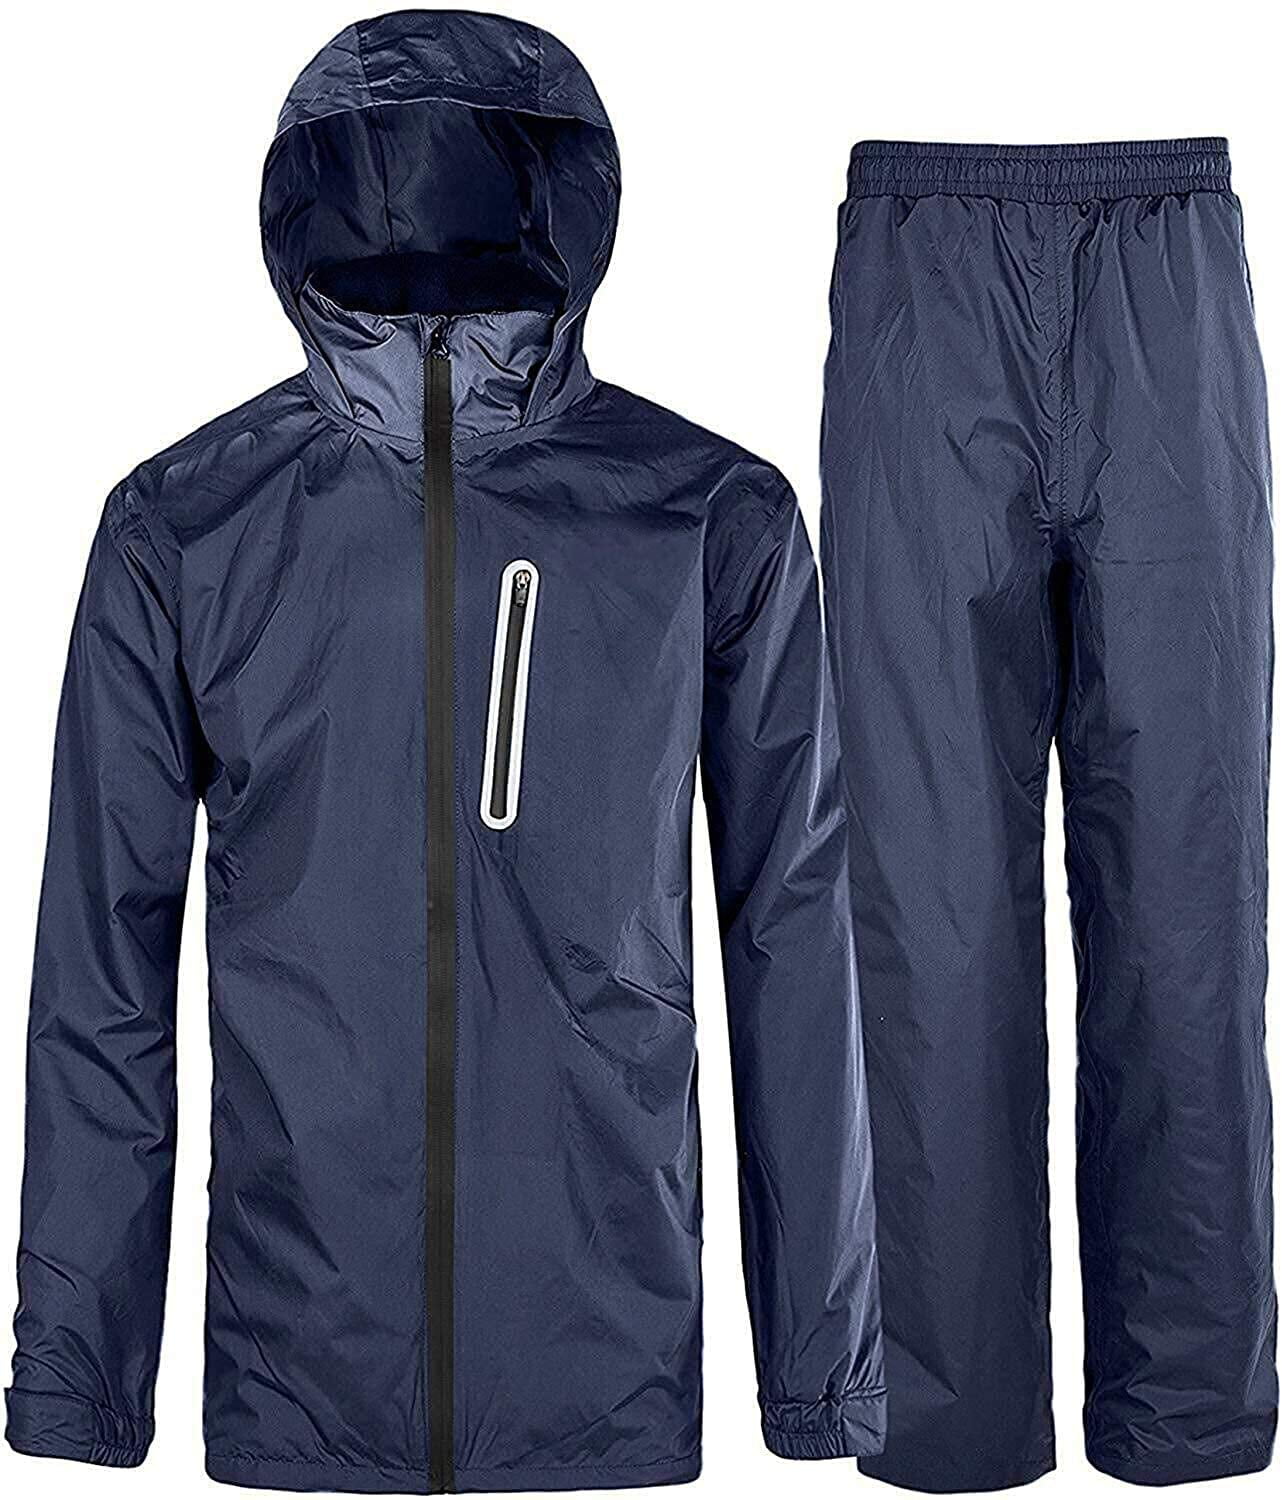 SWISSWELL Men's Rain Suit Waterproof Hooded Raincoat Jacket